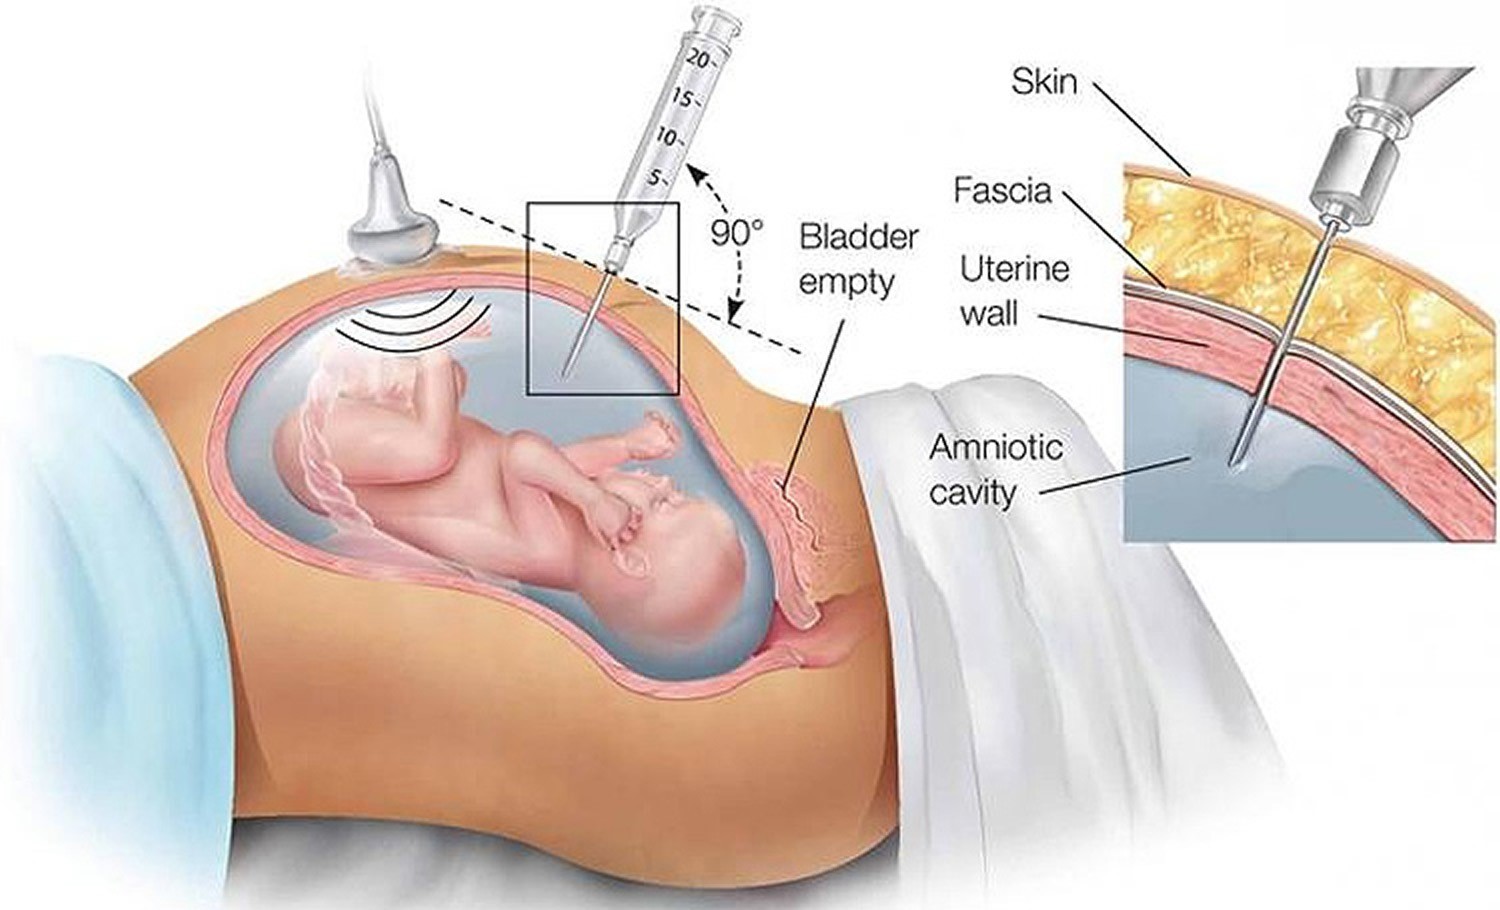 آمنیوسنتز یک آزمایش پیش از تولد است که برای مادران بارداری که ریسک بالاتری برای به دنیا آوردن نوزاد ناقص داشته باشند، انجام می شود. این آزمایش بر روی مایع آمنیون (مایع داخل کیسه ی اطراف جنین)  انجام می شود.